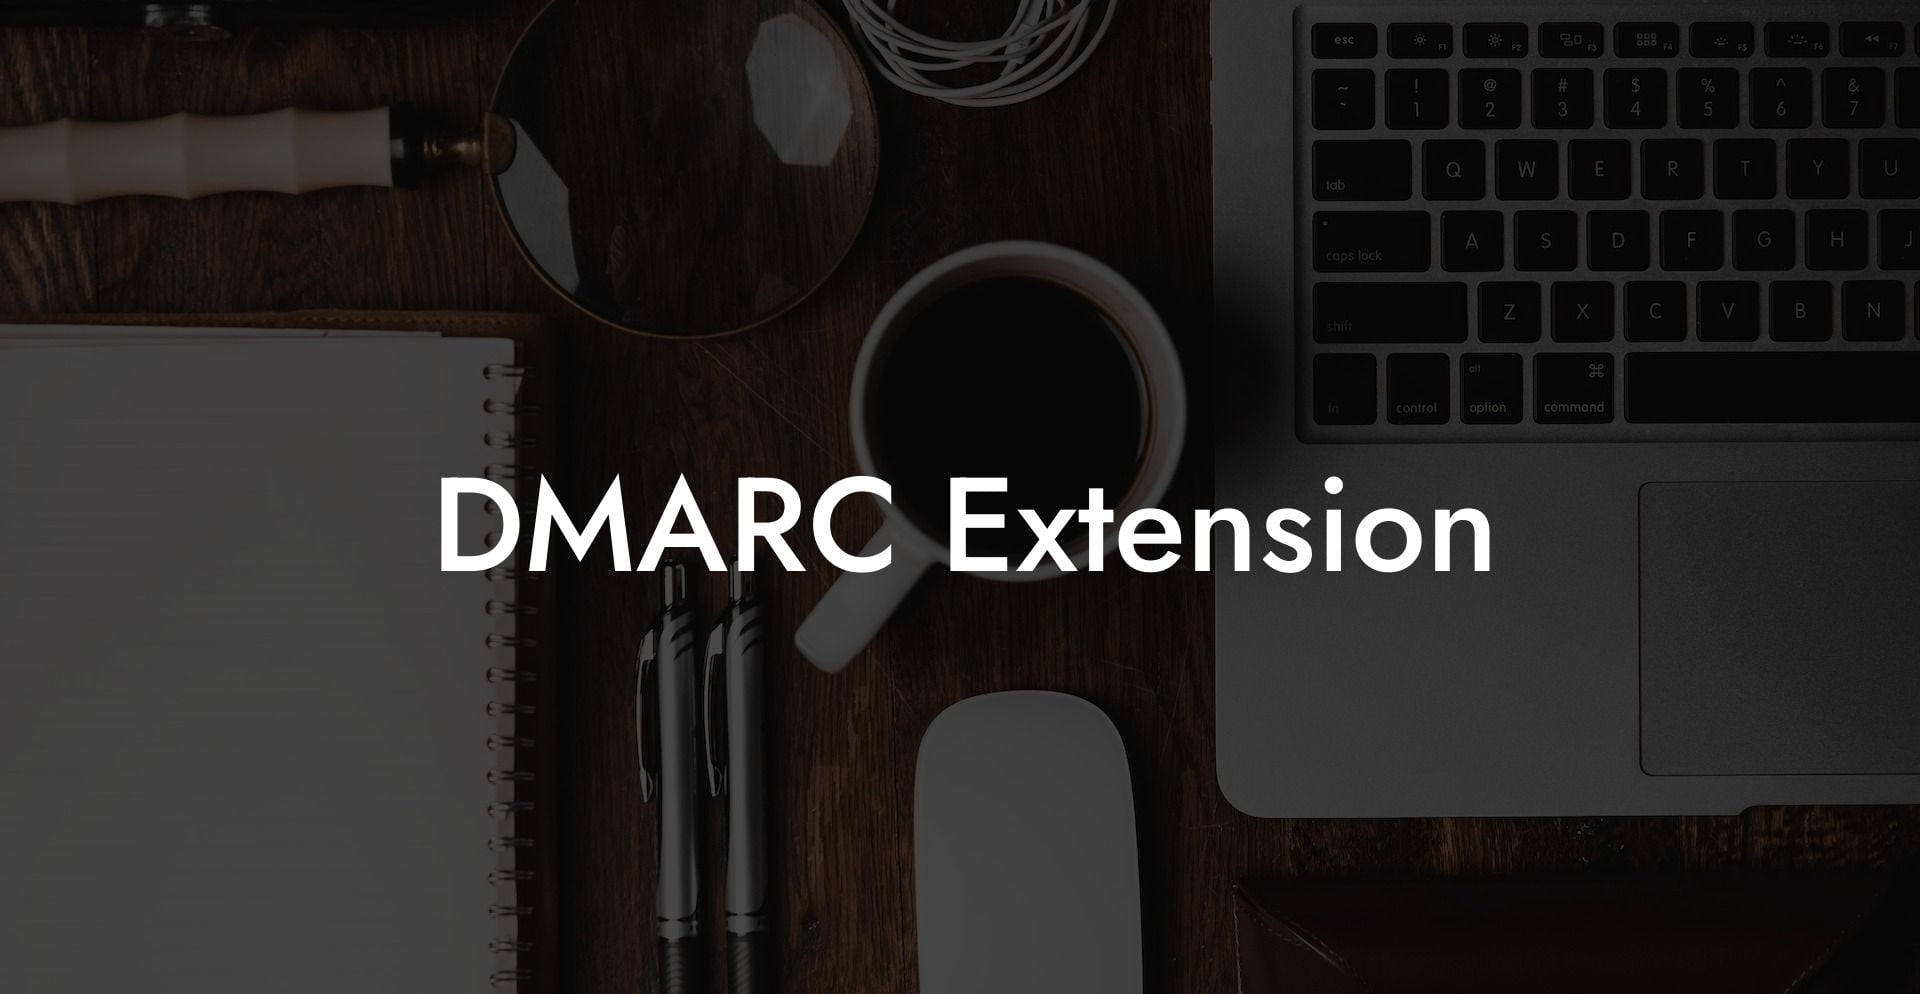 DMARC Extension